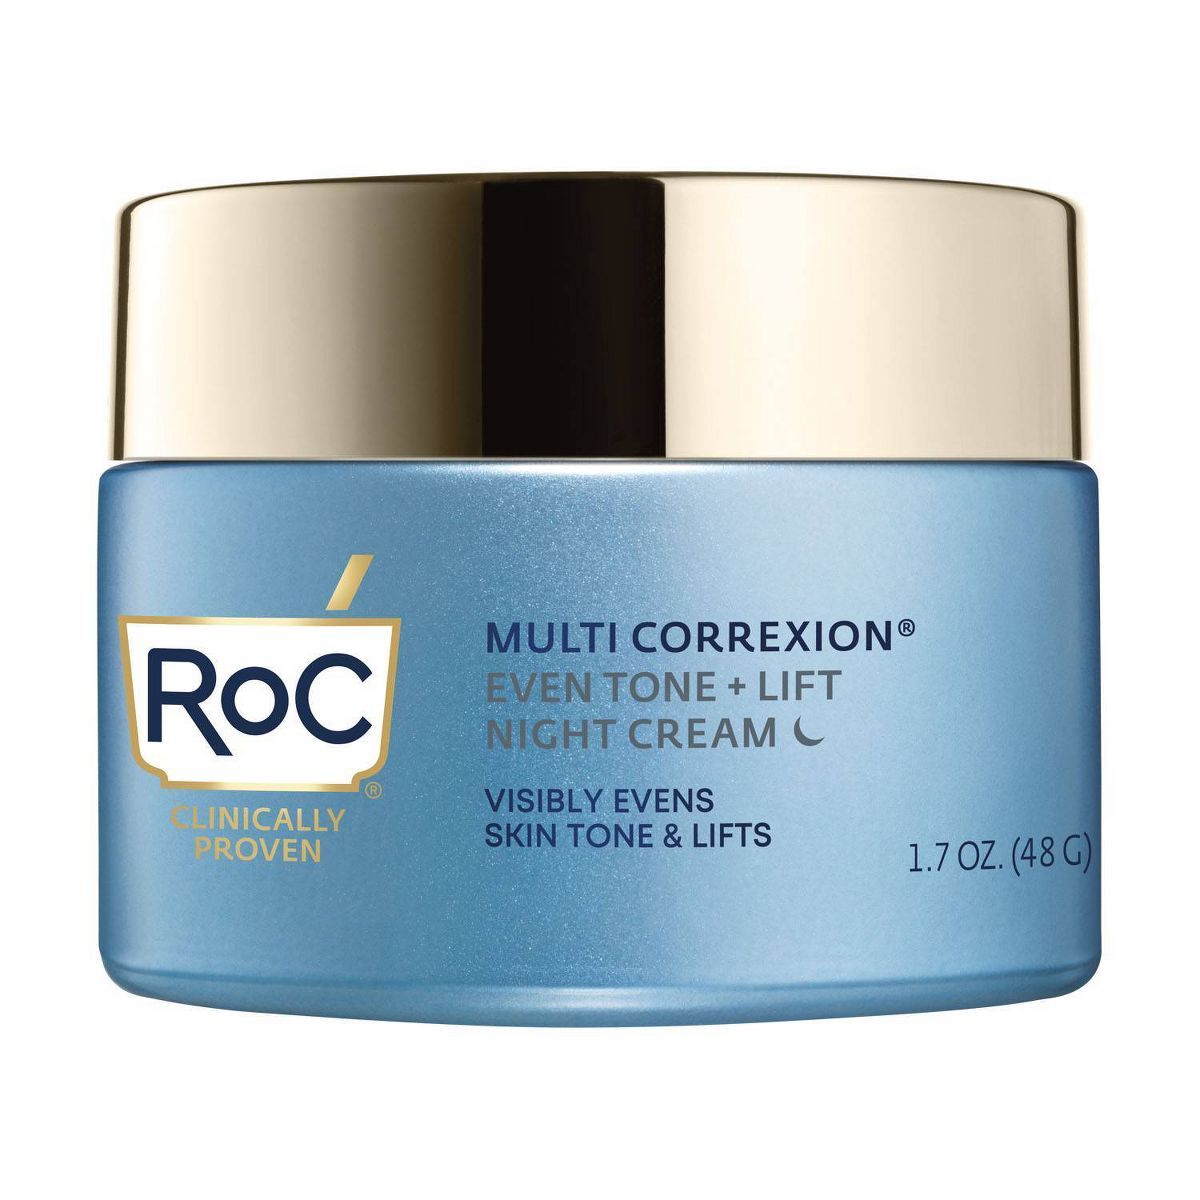 RoC Multi Correxion Even Tone & Lift Night Cream - 1.7oz | Target